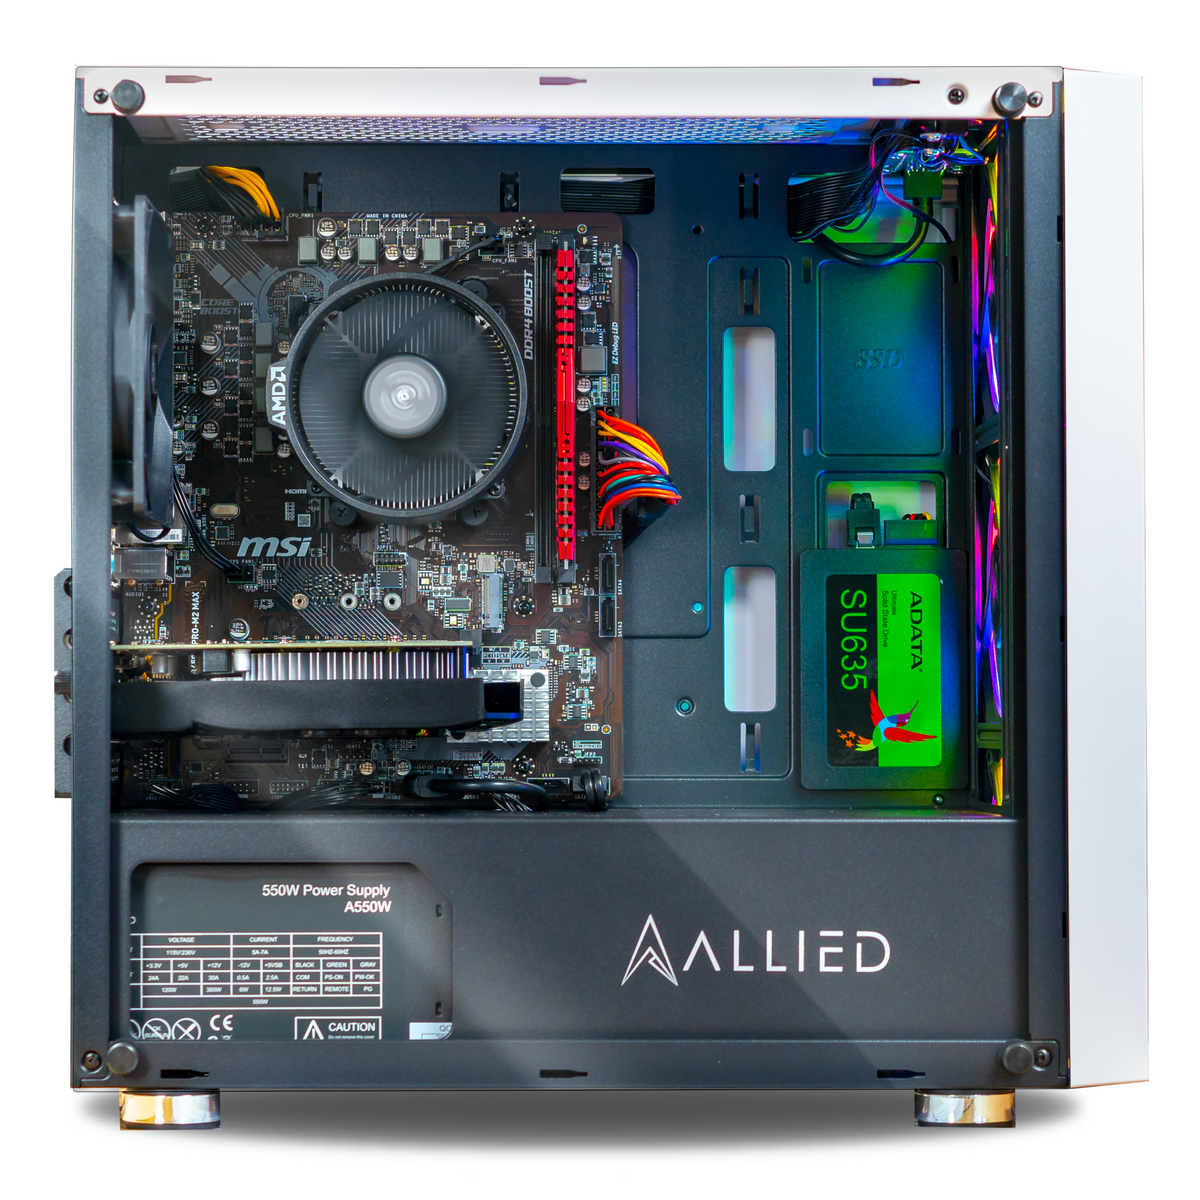 Allied Stinger-A: AMD Ryzen 5 1600 | AMD RX 560 Gaming PC